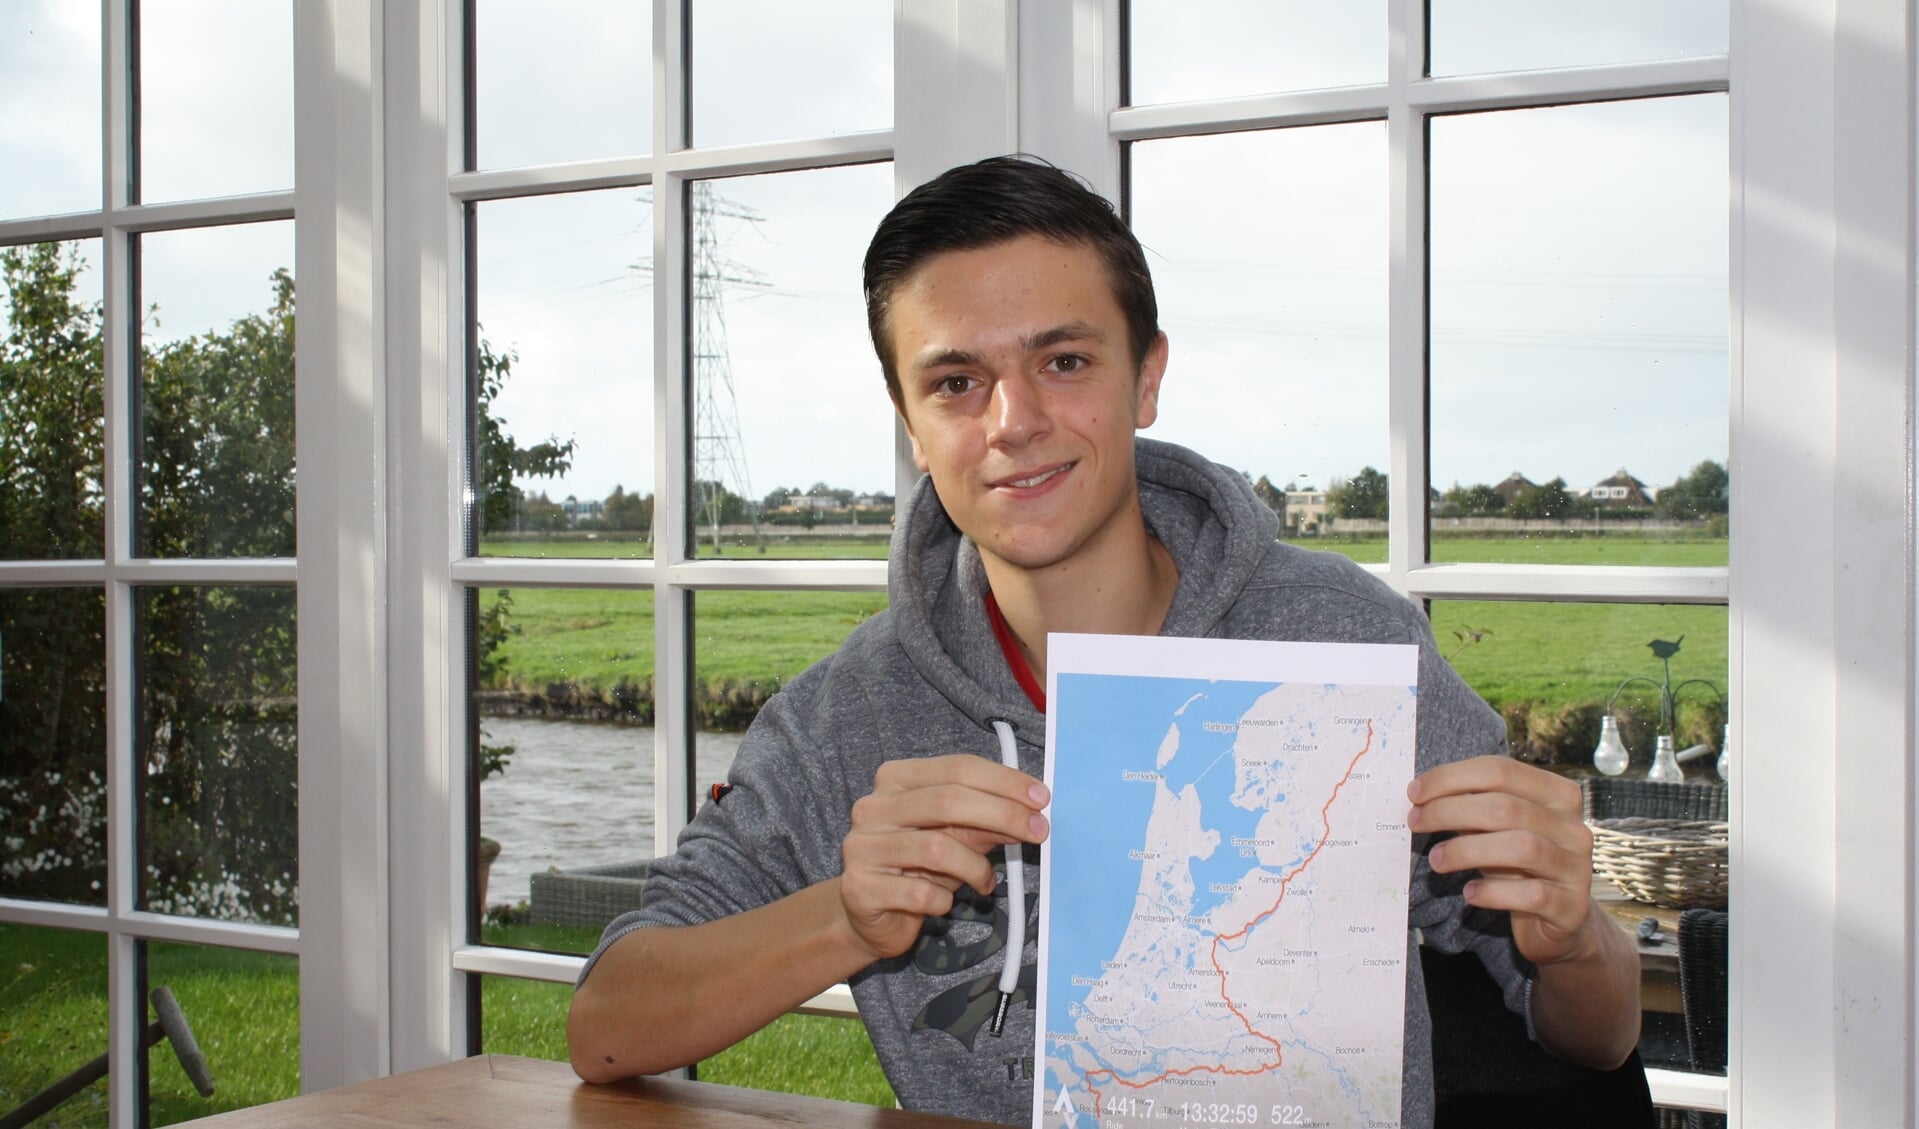 Rik van der Zon met de route die hij met vier medestudenten fietsend wil afleggen op 3 november.